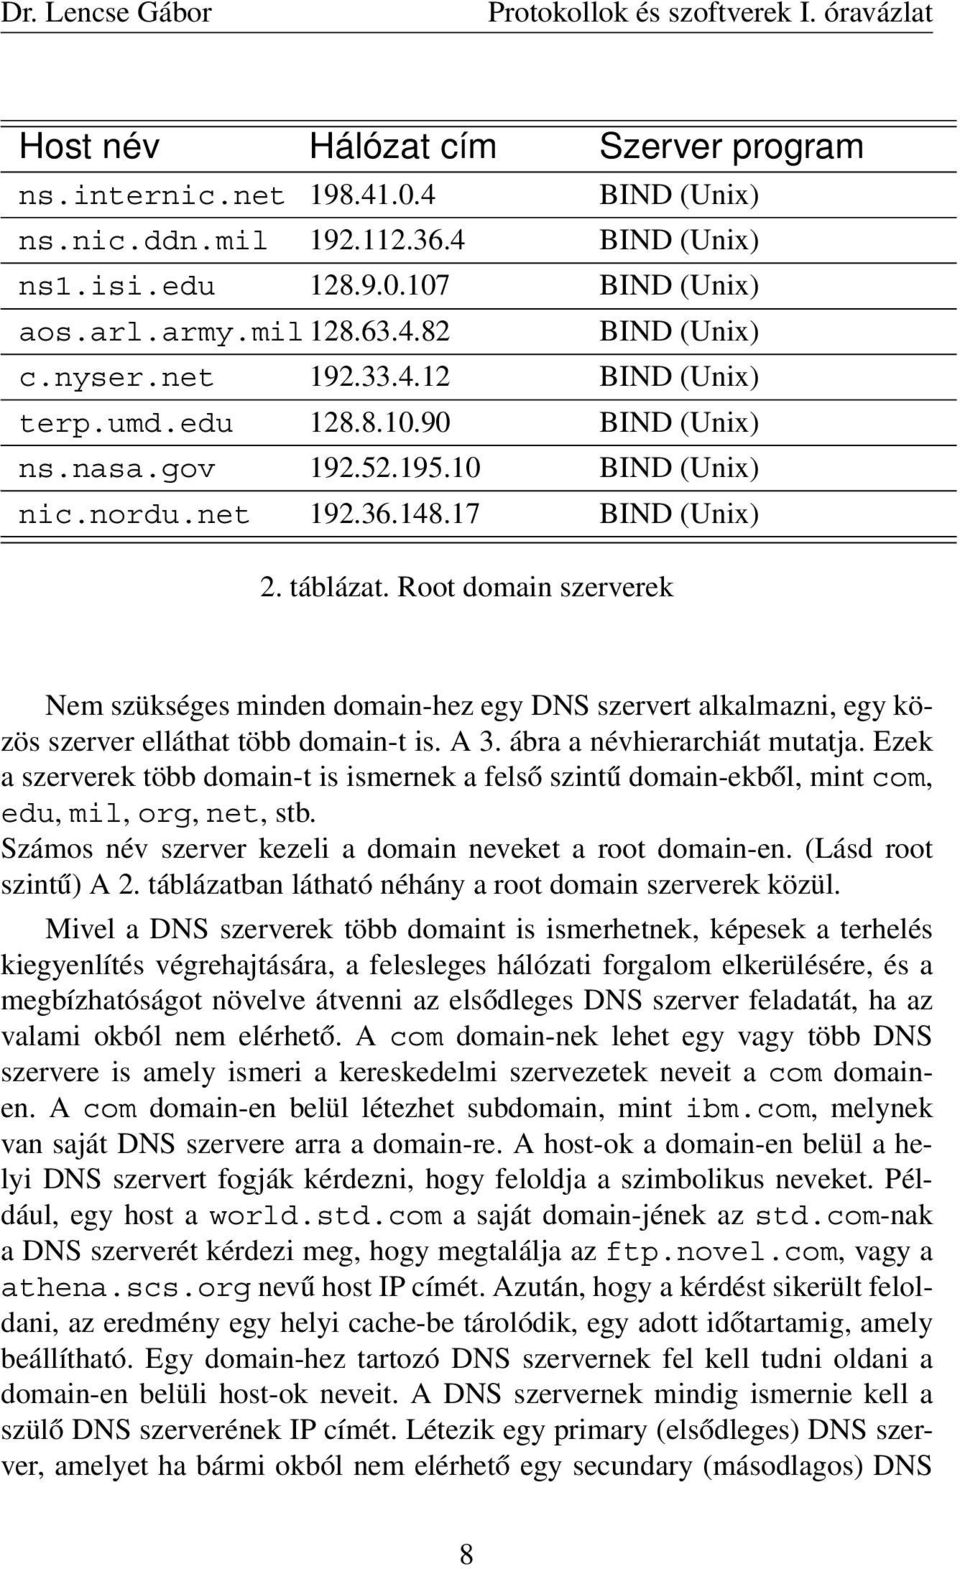 Root domain szerverek Nem szükséges minden domain-hez egy DNS szervert alkalmazni, egy közös szerver elláthat több domain-t is. A 3. ábra a névhierarchiát mutatja.